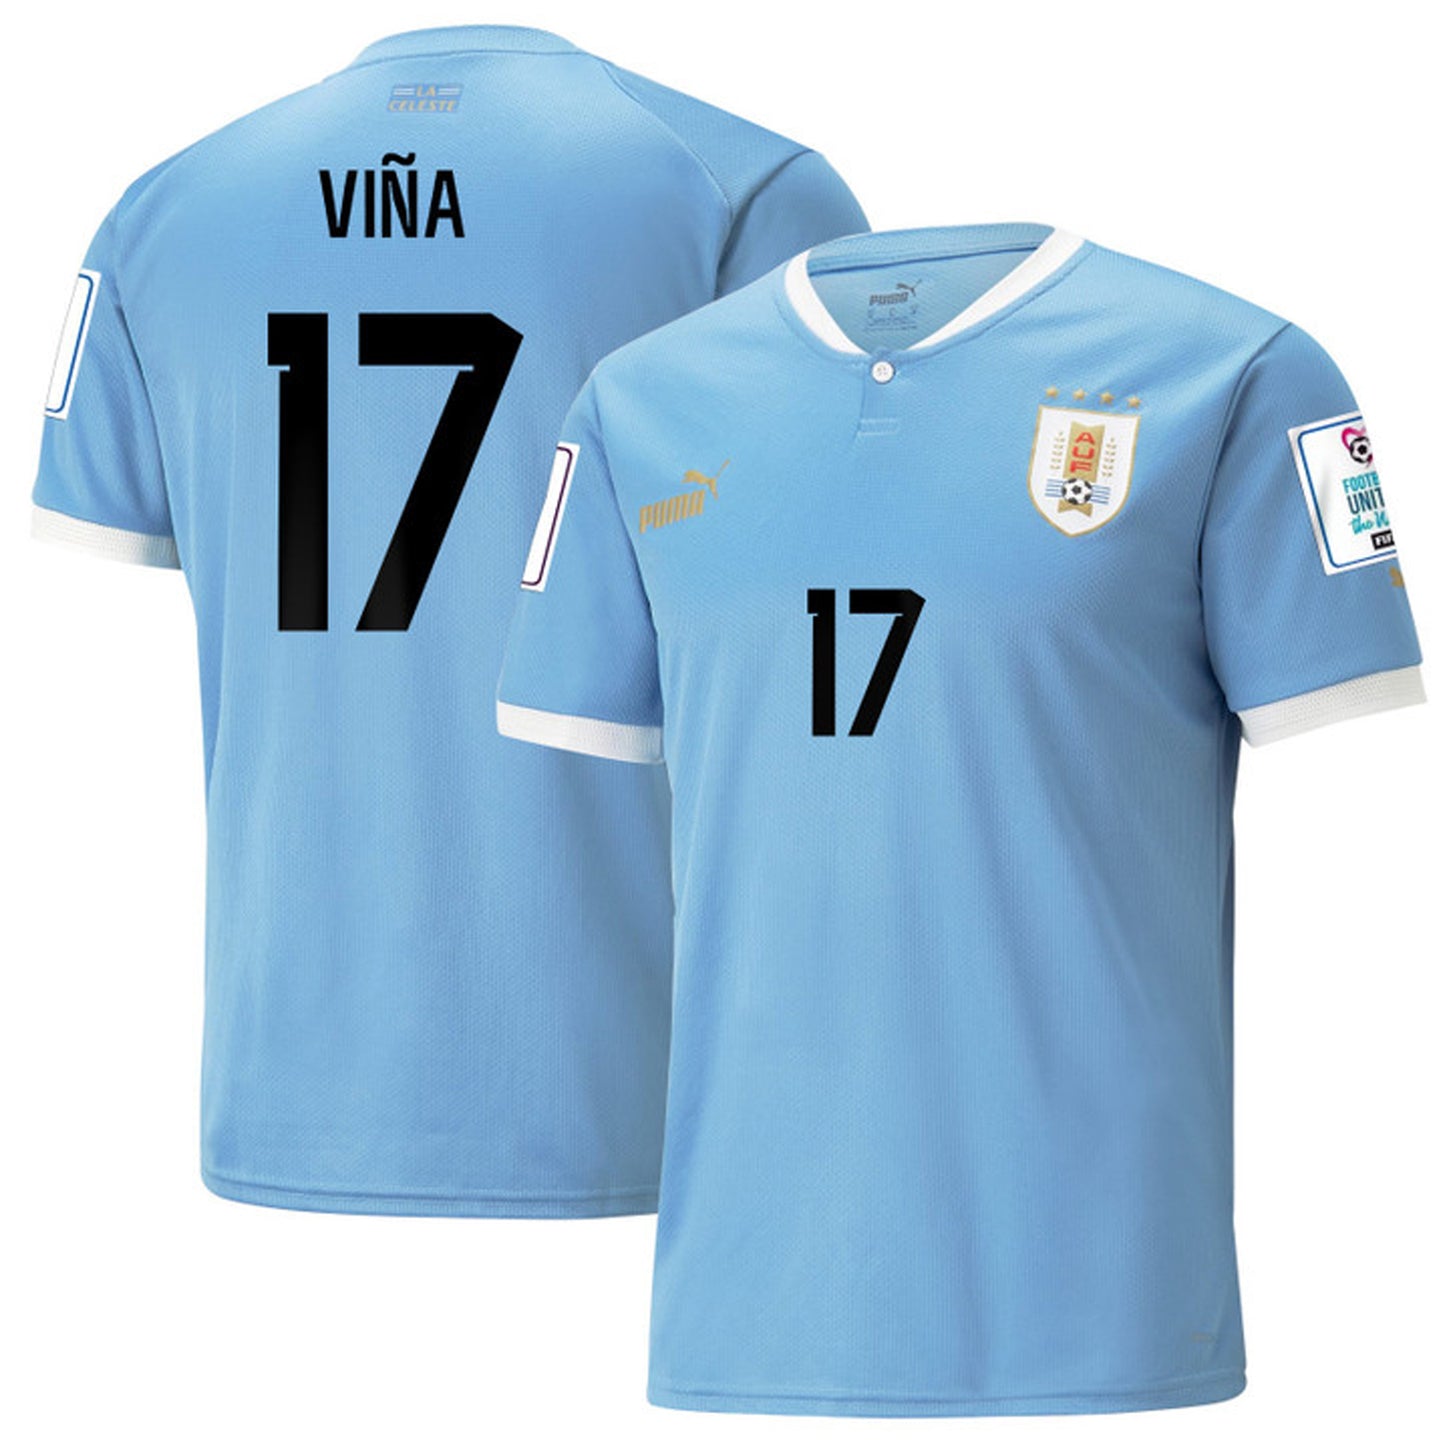 Matías Viña Uruguay 17 Fifa World Cup Jersey